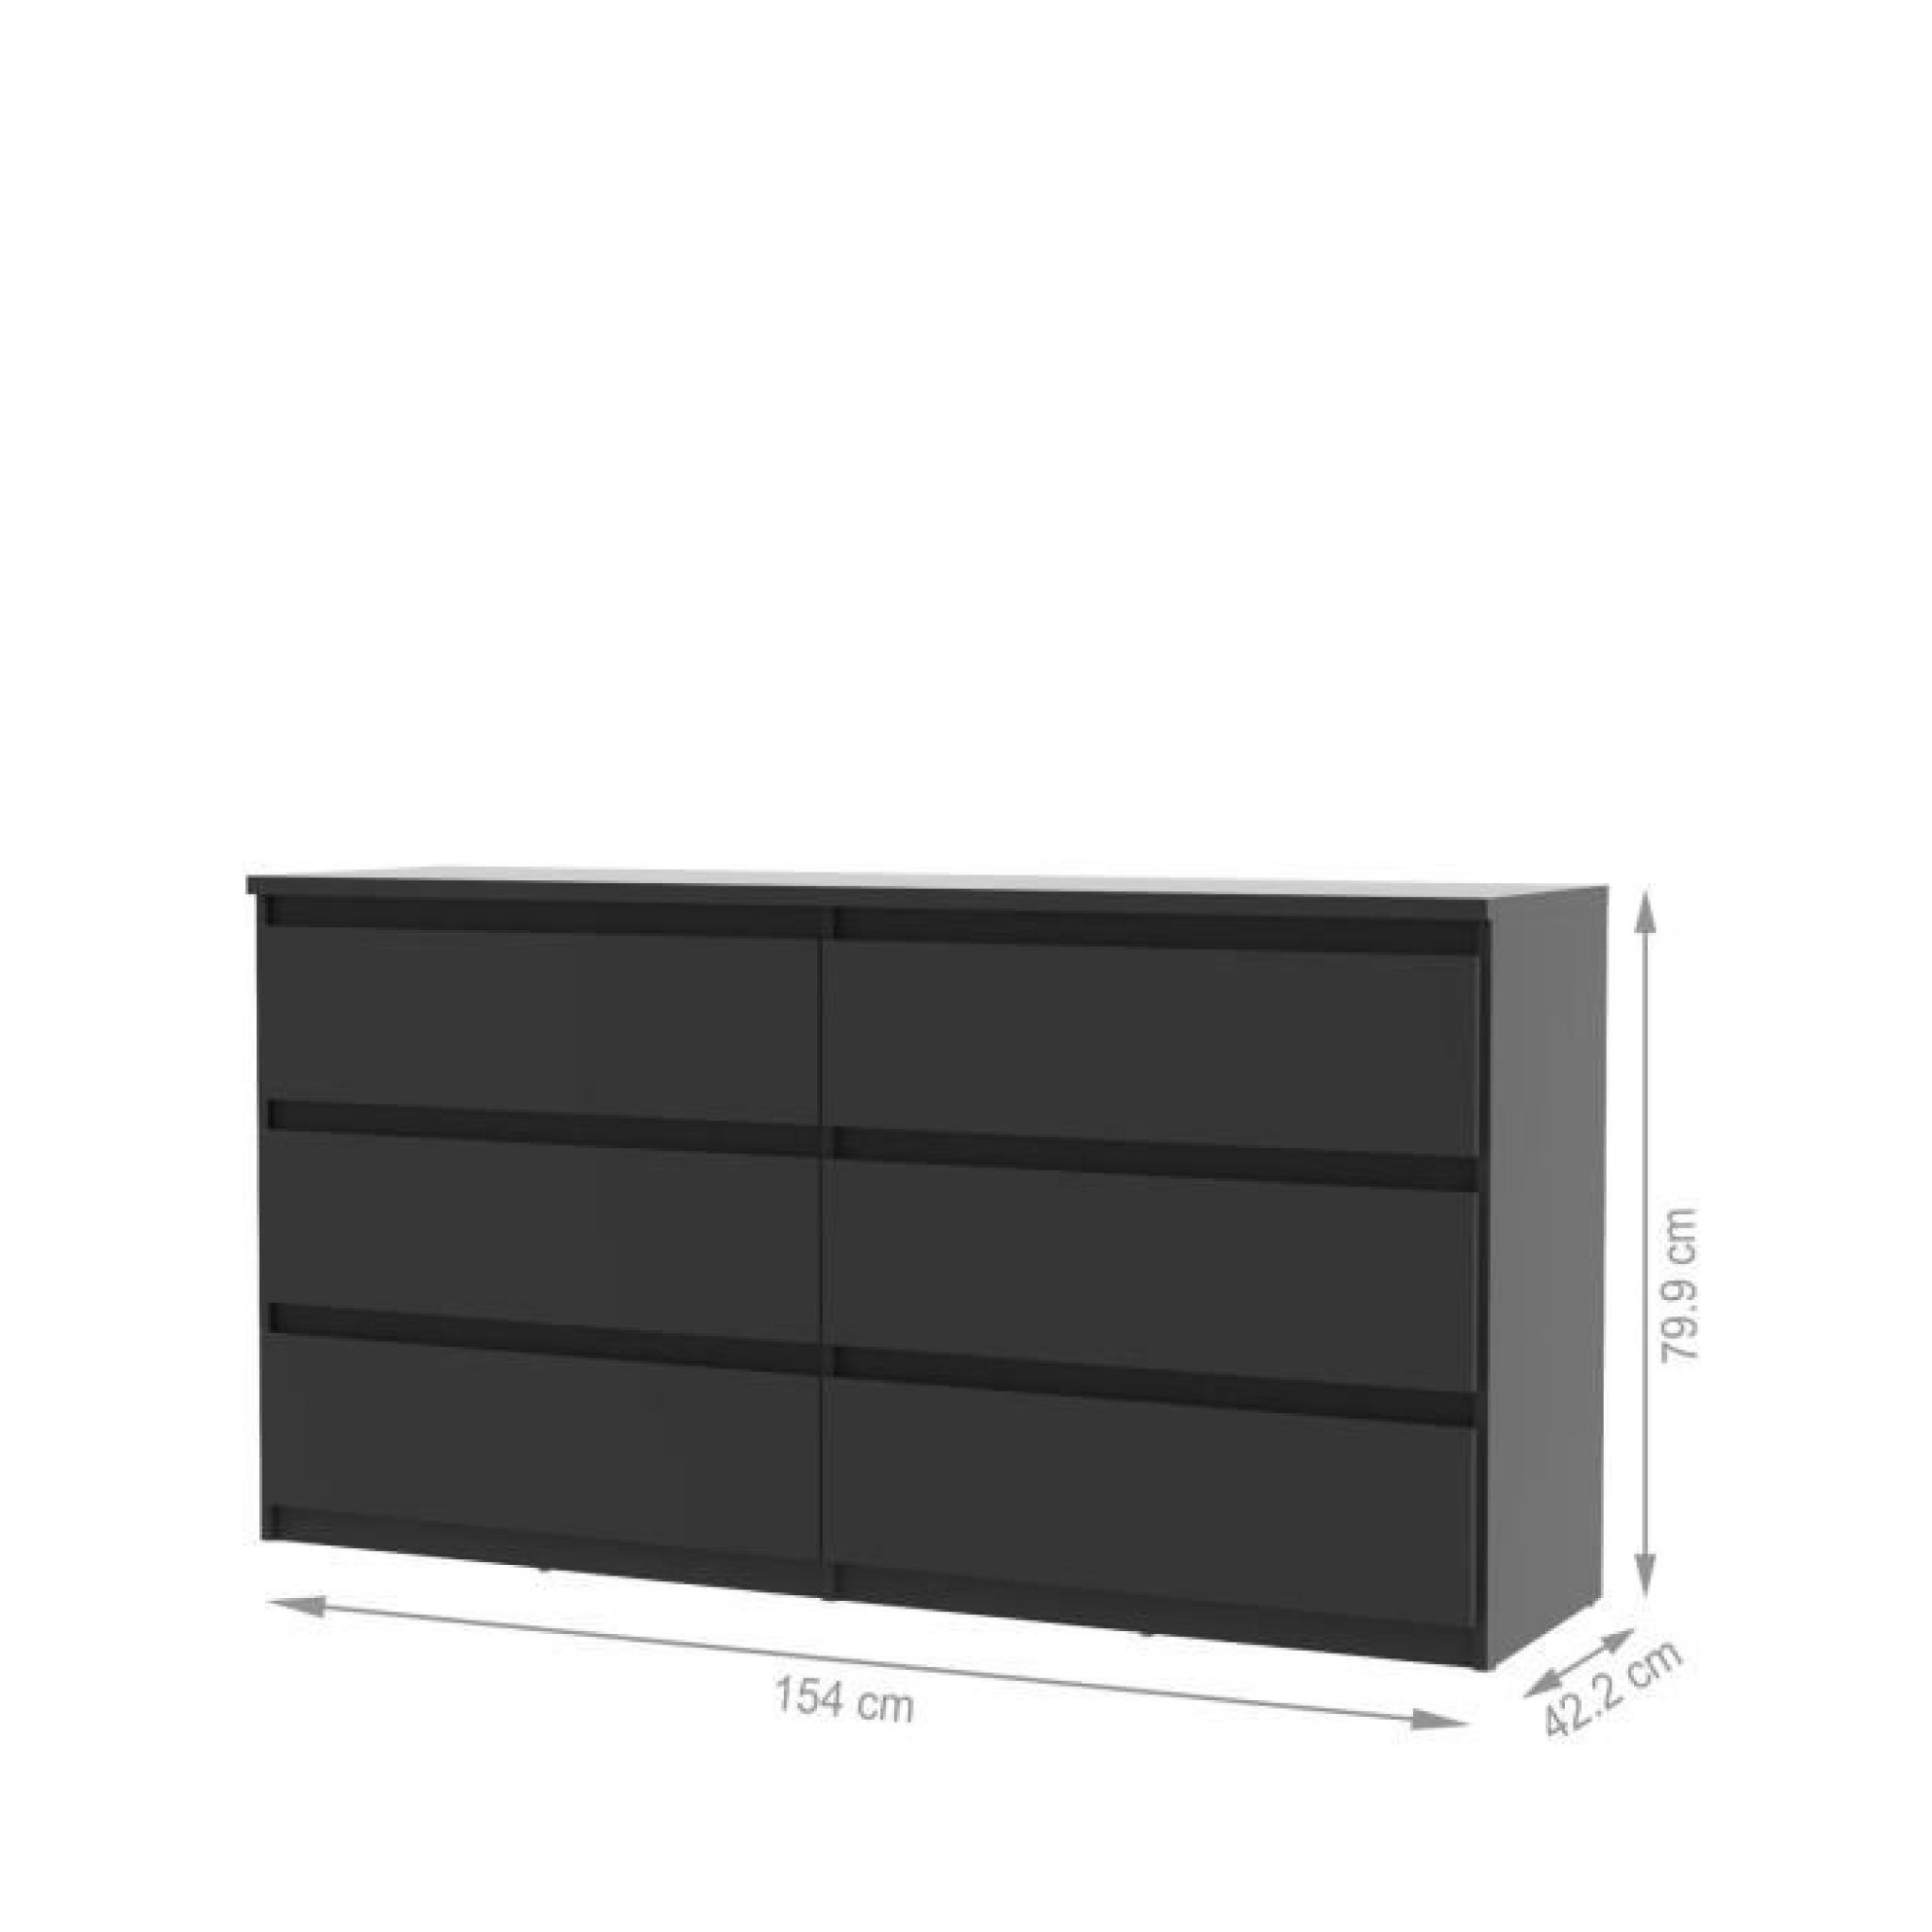 FINLANDEK Commode NATTI 154cm noir pas cher